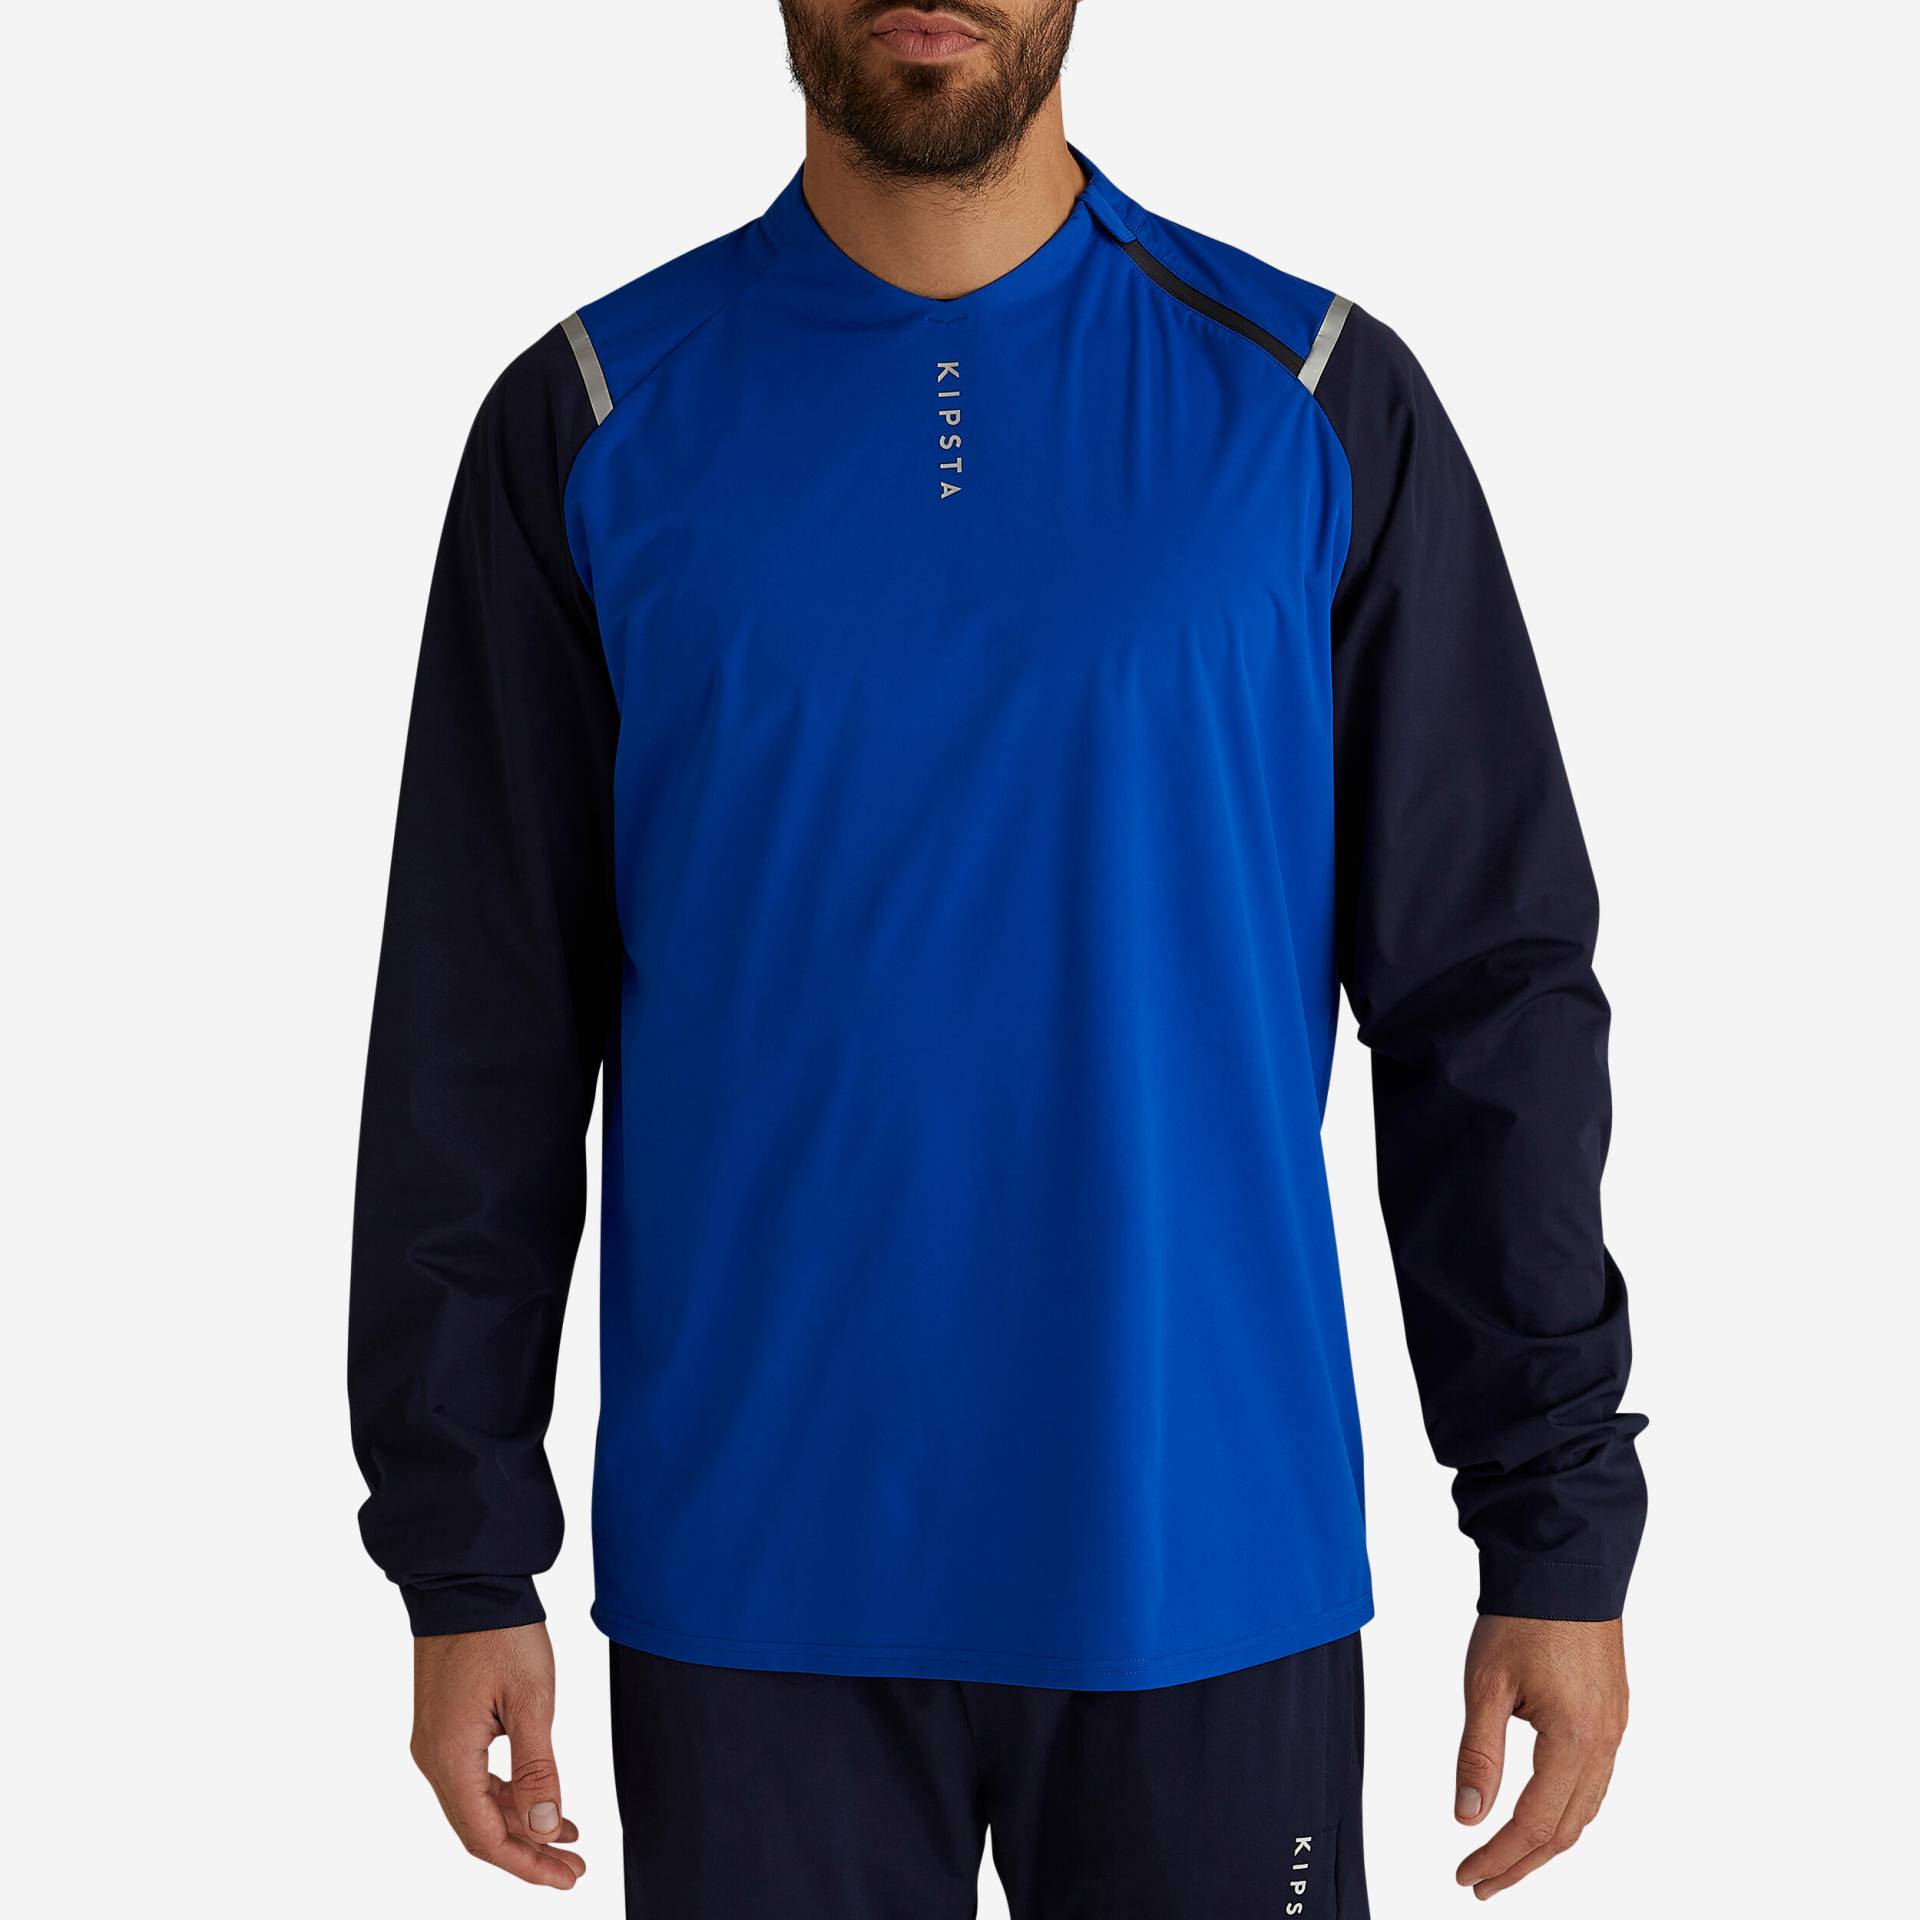 Damen/Herren Fussball Sweatshirt wasserdicht - T500 blau von KIPSTA